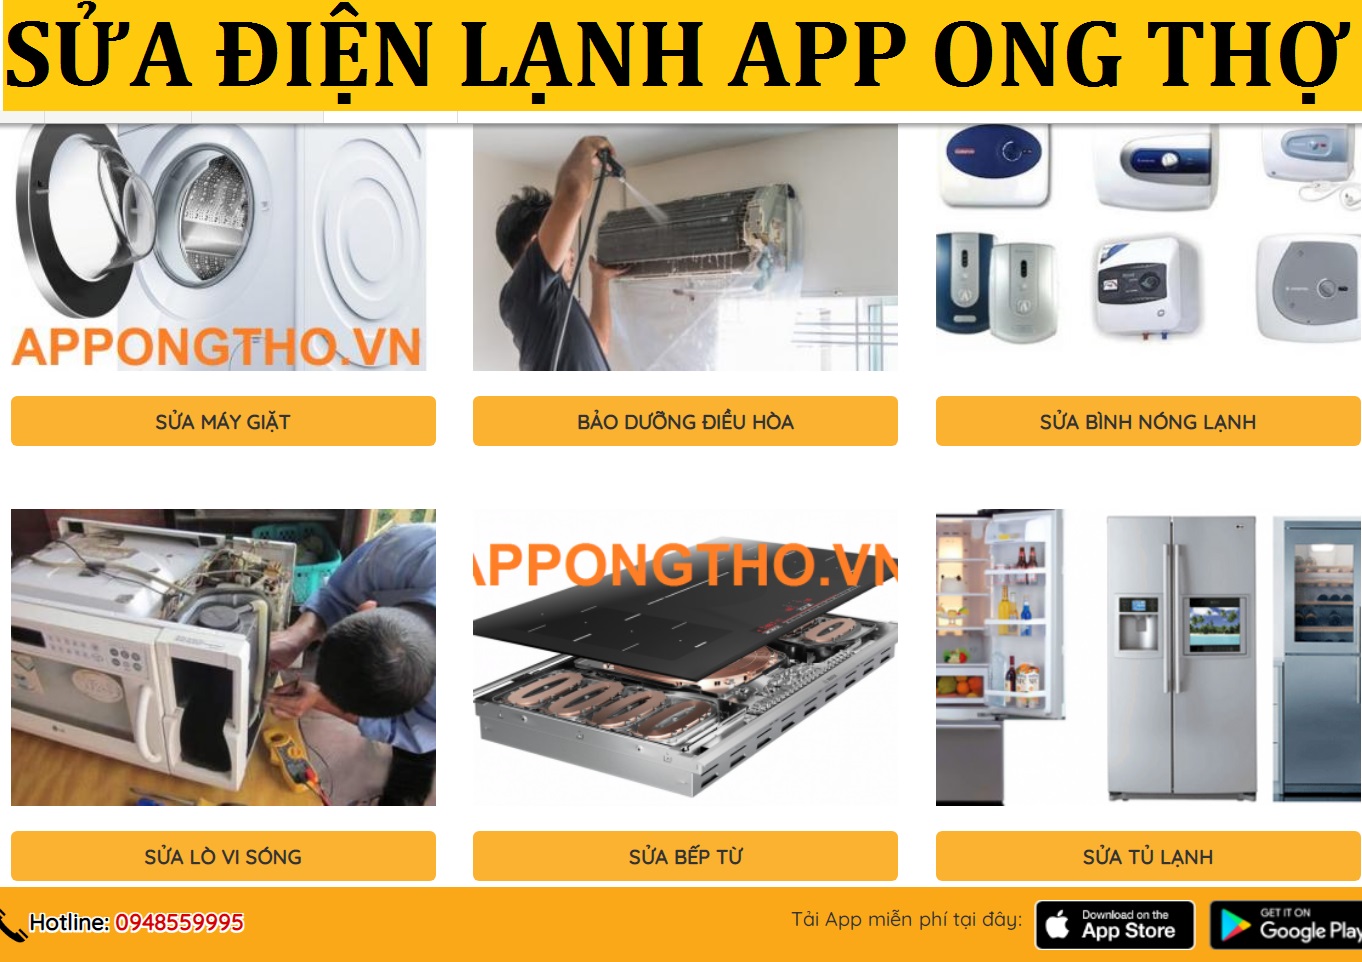 Sửa Tủ Lạnh Ở Hà Nội [15 Địa Chỉ Uy Tín, Giá Rẻ, Yên Tâm] APP ONG THỢ